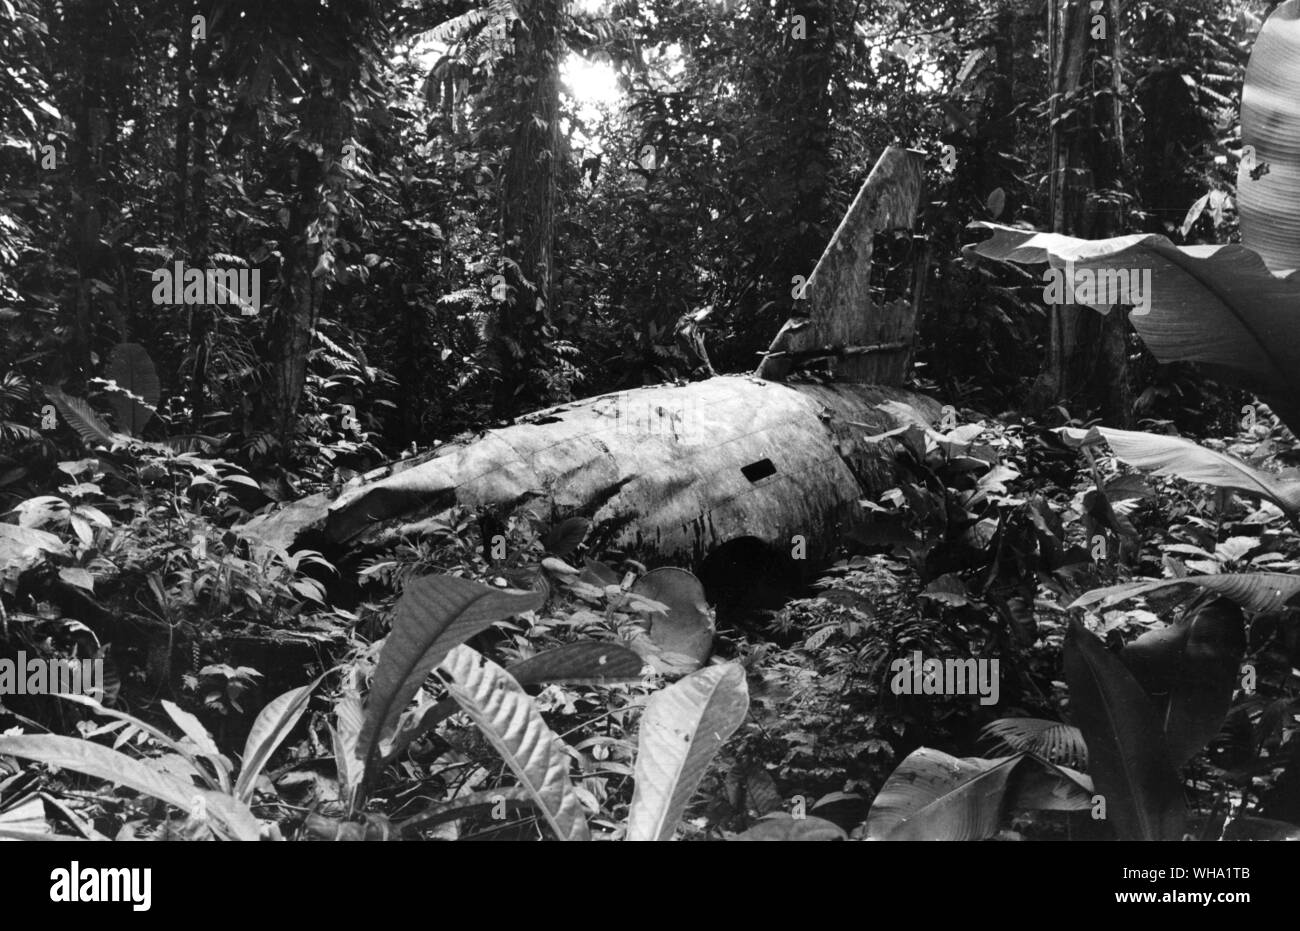 WW2 : Le tombeau de Yamamoto ; recouvert de mousse épaisse et vivant avec les insectes et les lézards. Yamamoto était un des meilleurs hommes et Japans militaire planifié l'attaque sur Pearl Harbor. Il a rencontré sa fin dans cette épave brûlée . Banque D'Images